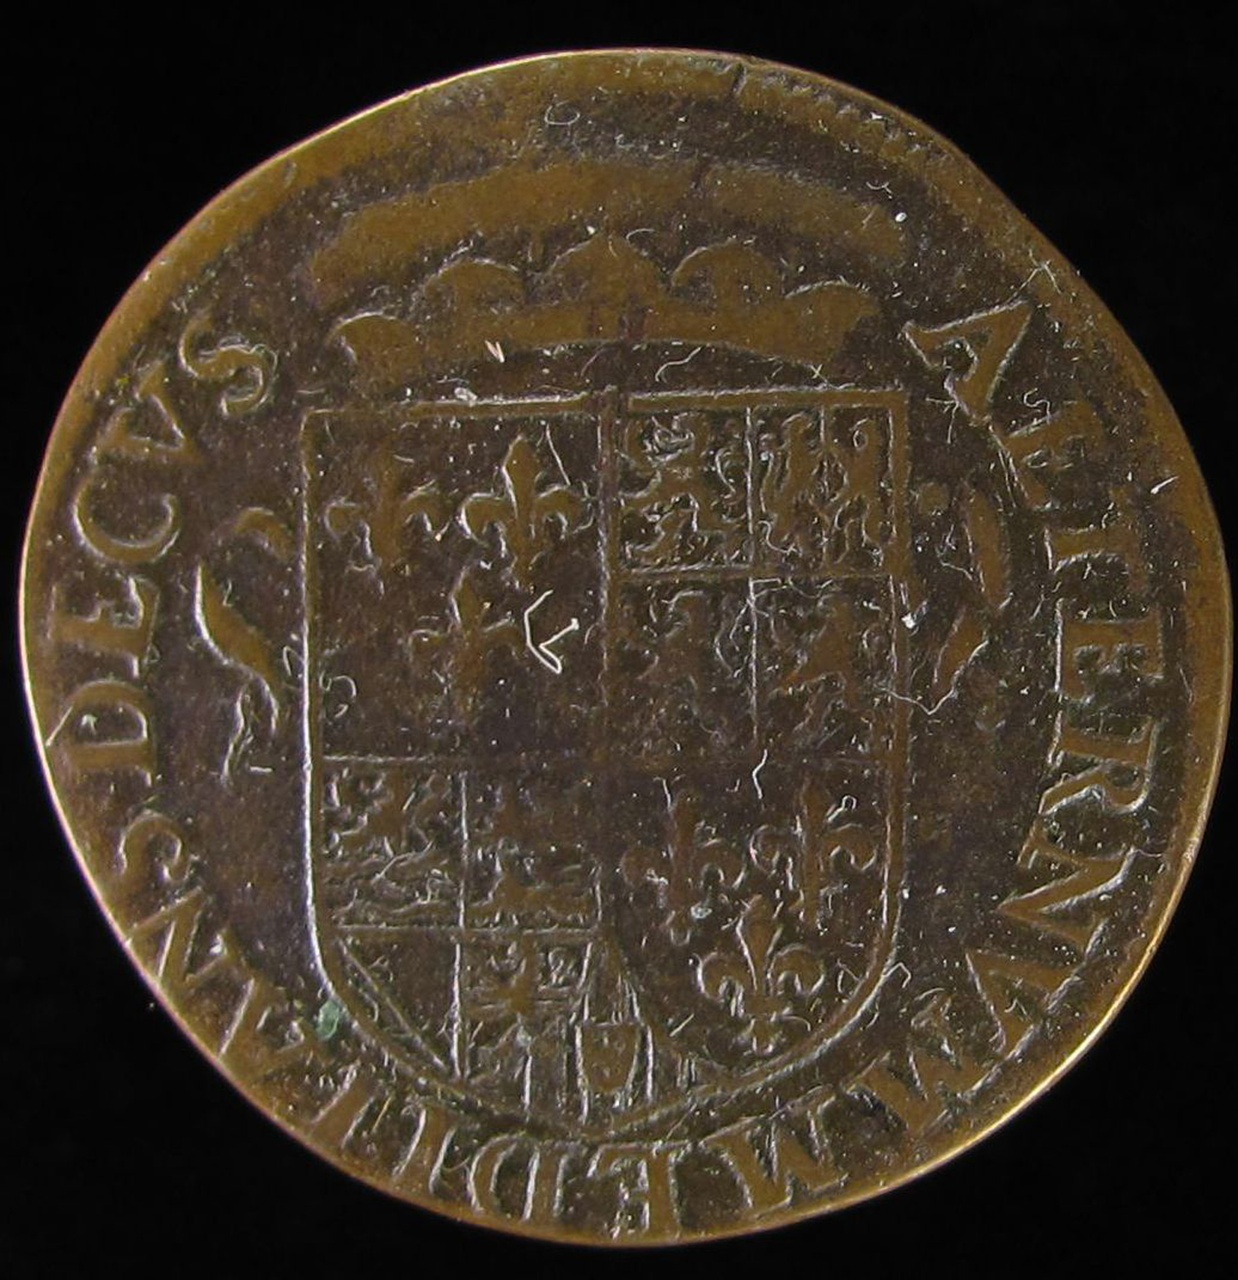 Legpenning op de hertog van Anjou, 1582